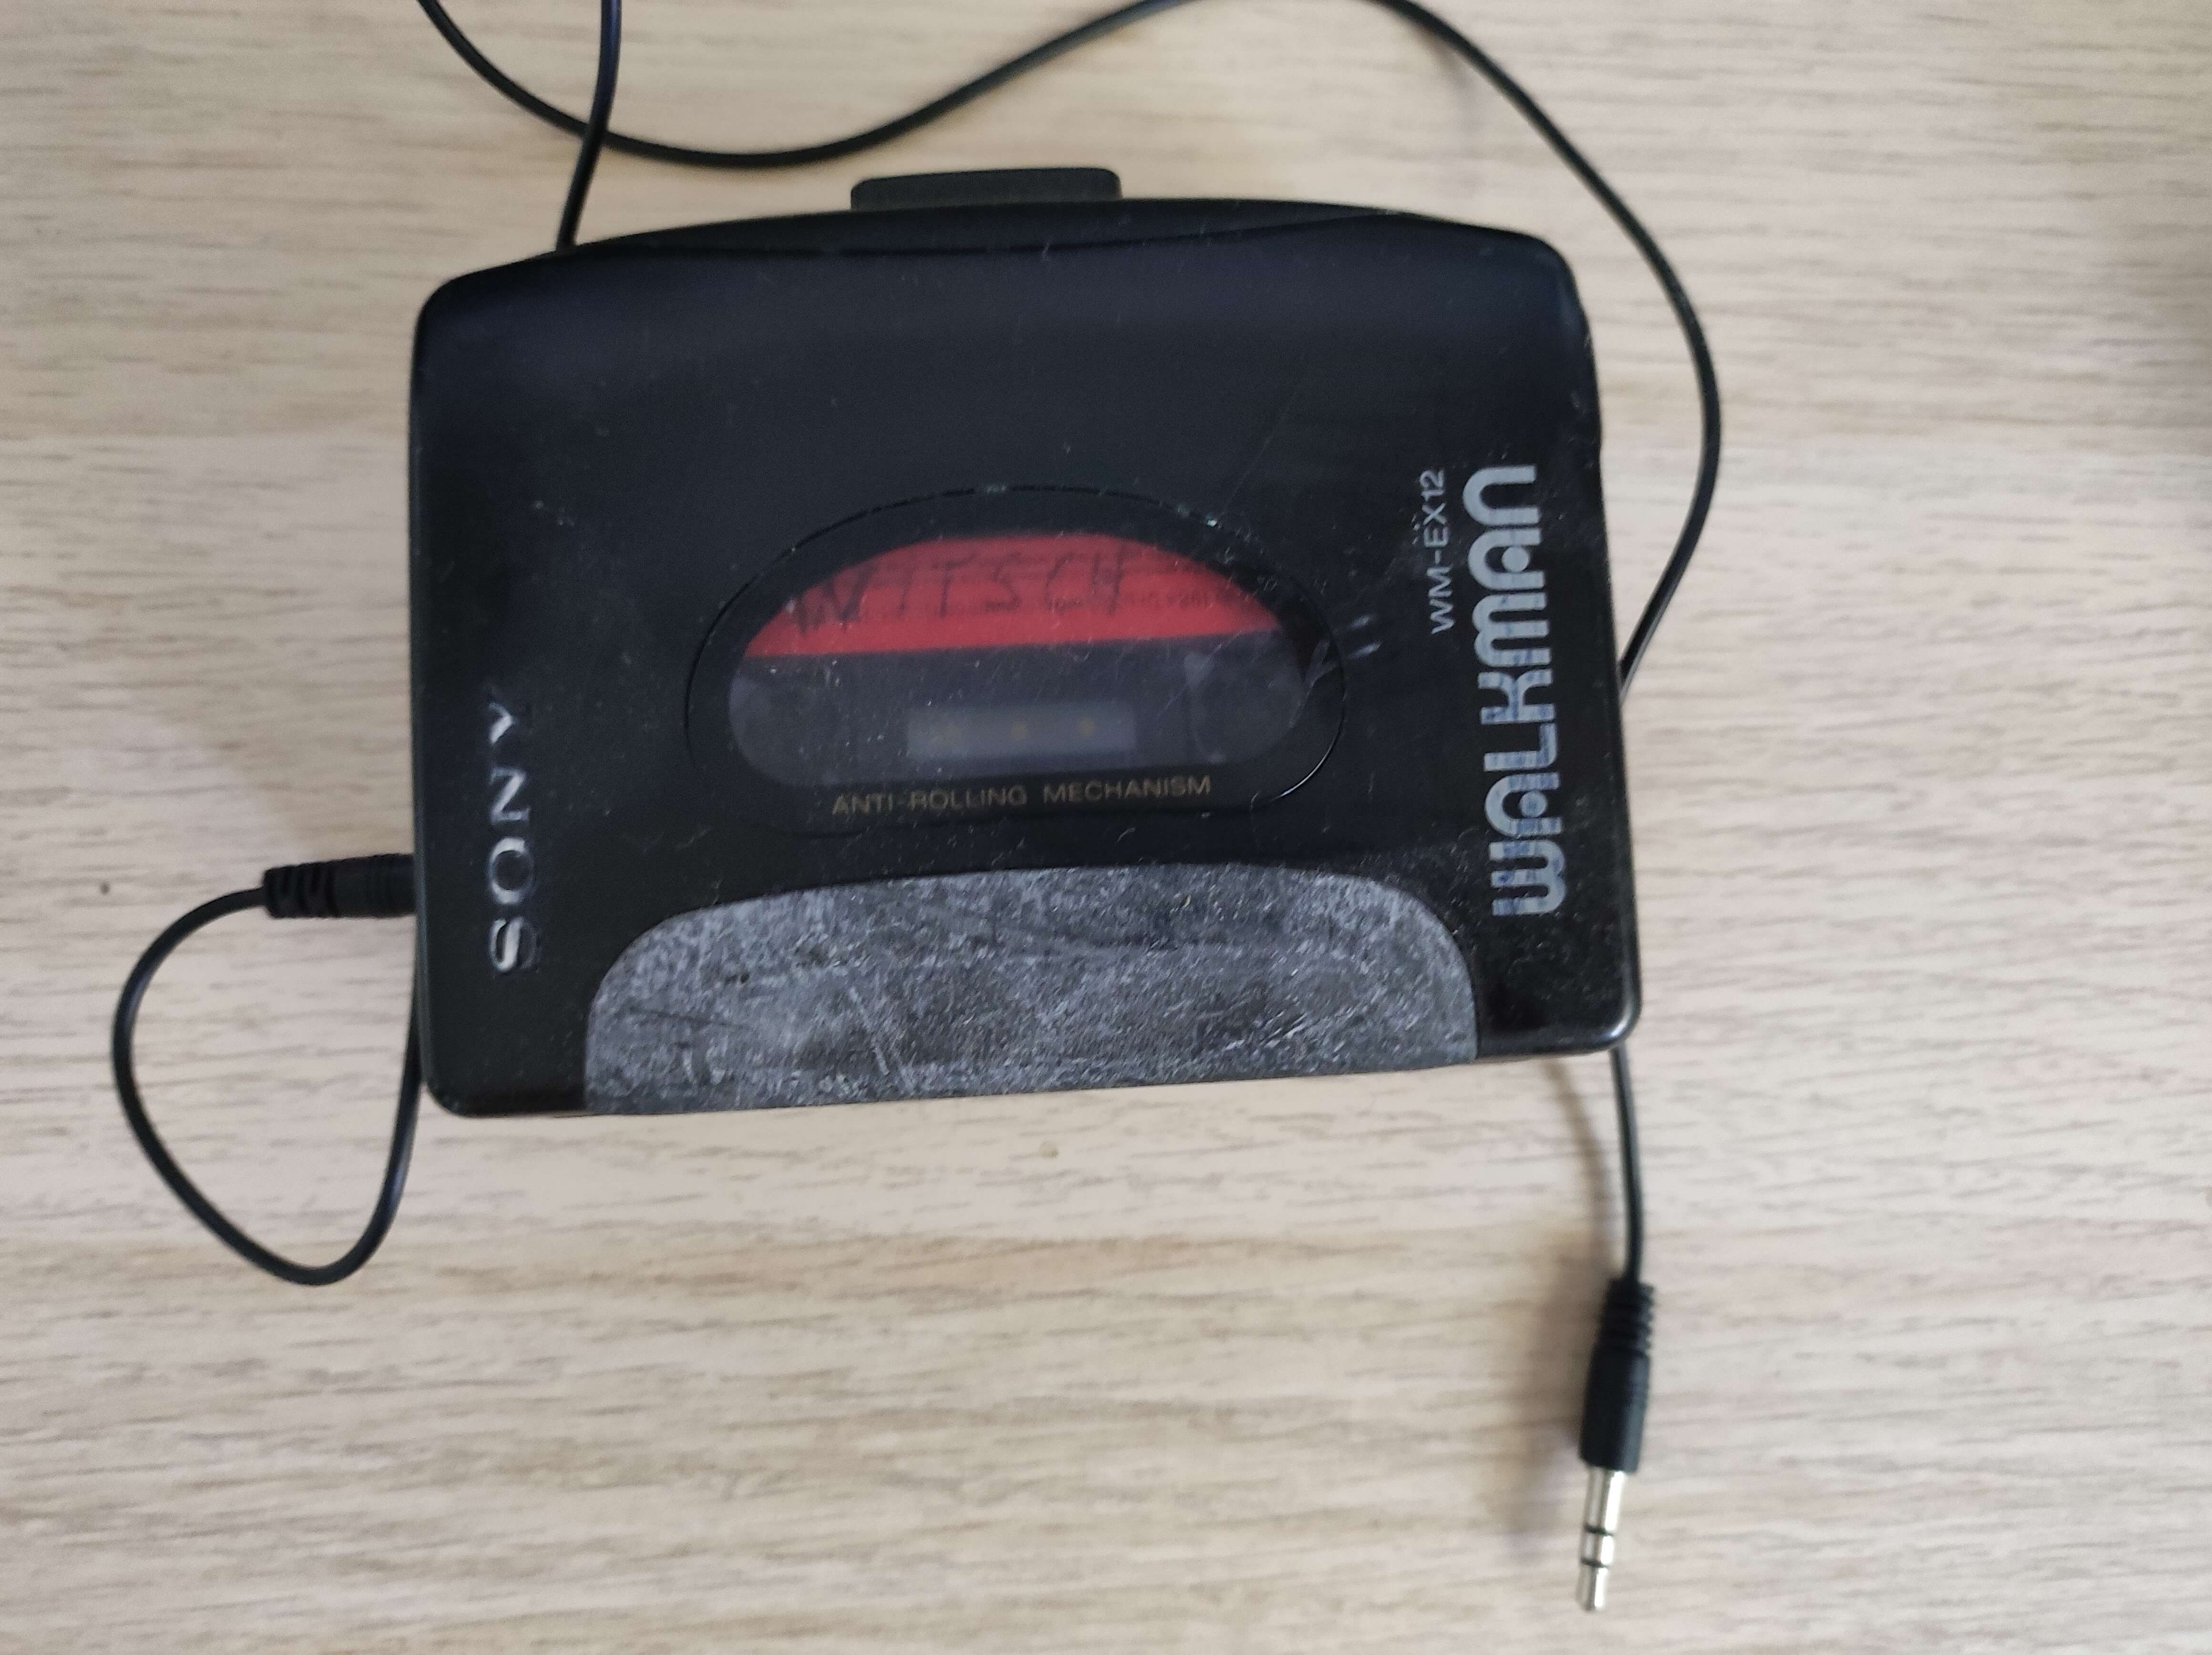 Sony Walkman + 3,5mm Klinkekabel - zum überspielen von Kasetten